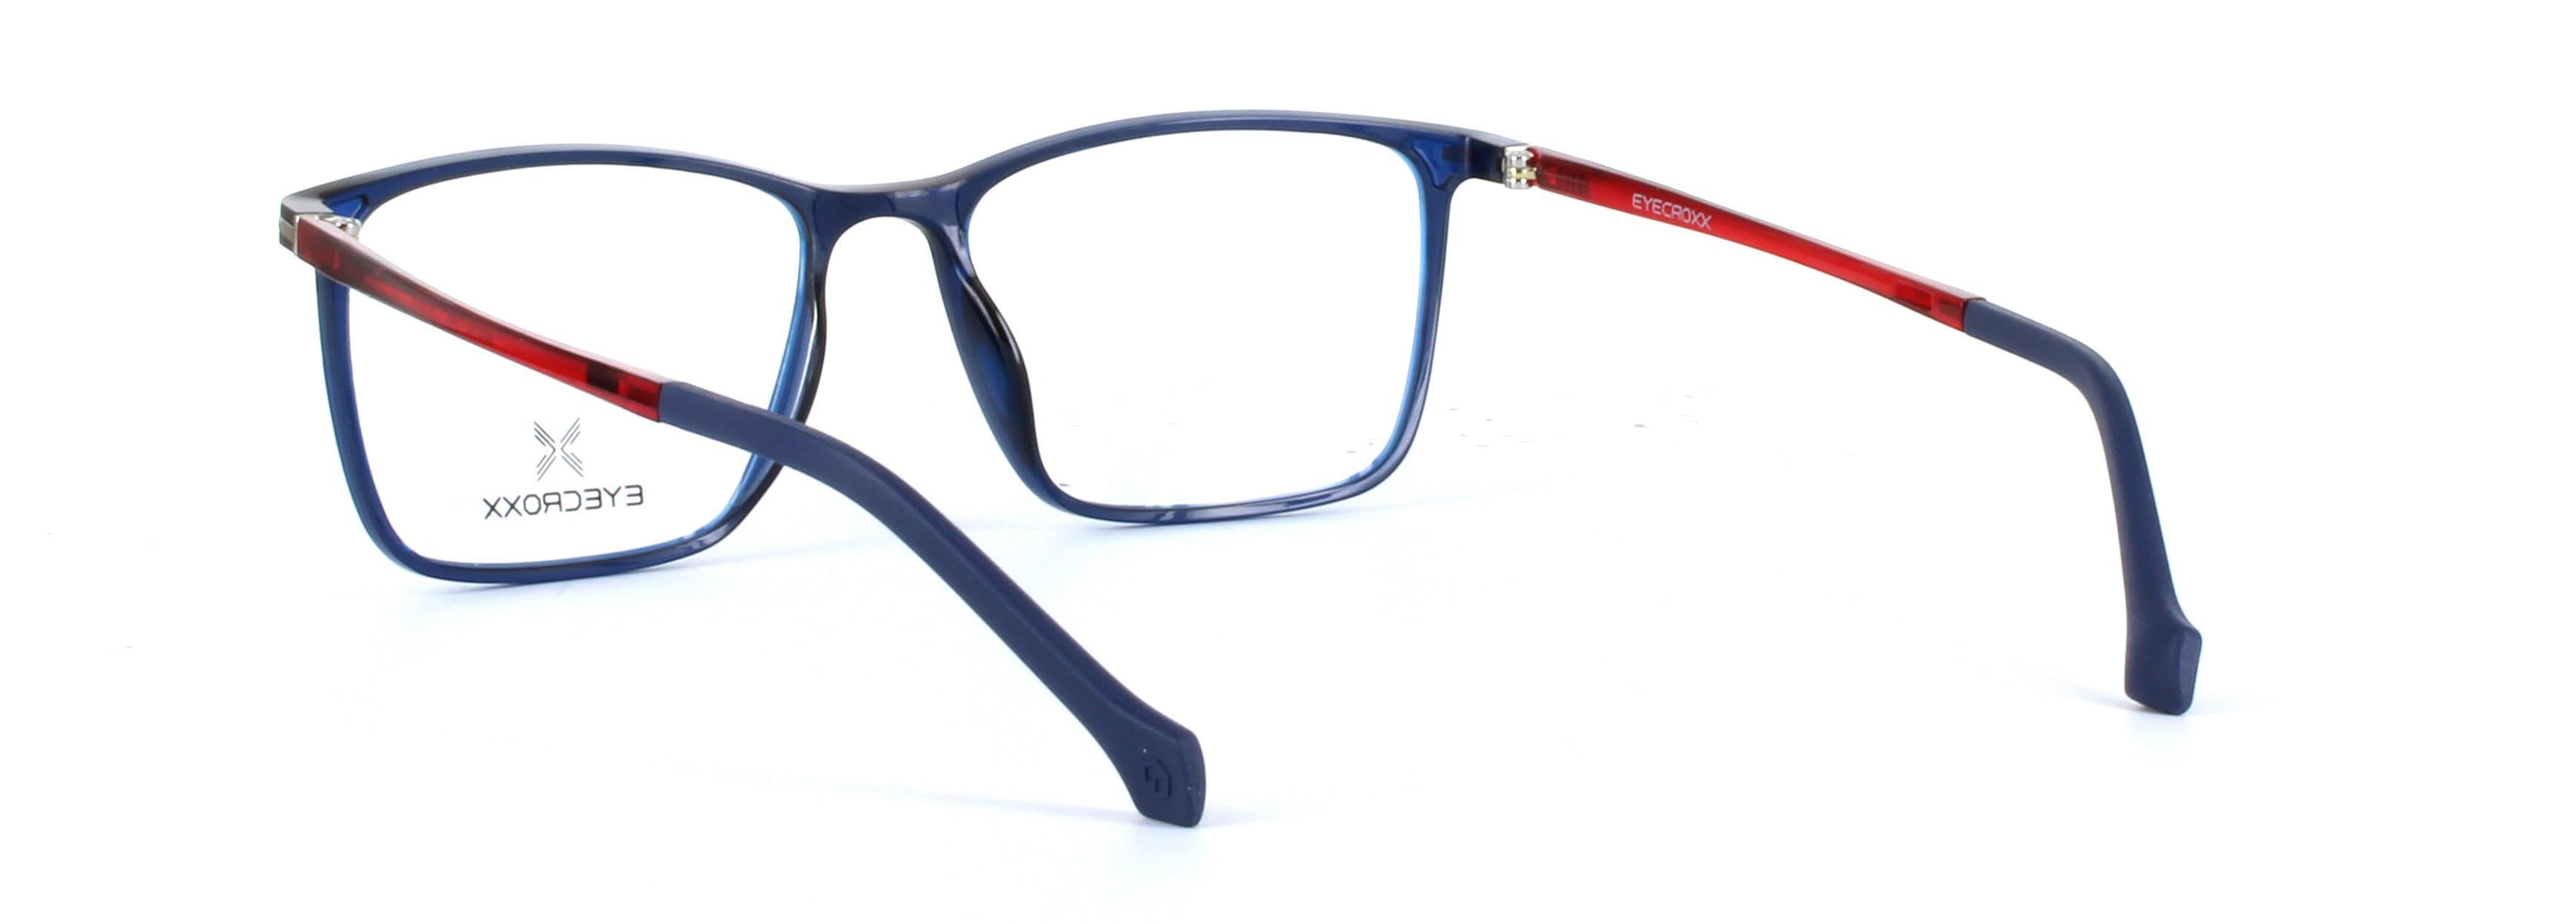 Eyecroxx 588-C3 Blue Full Rim Plastic Glasses - Image View 5